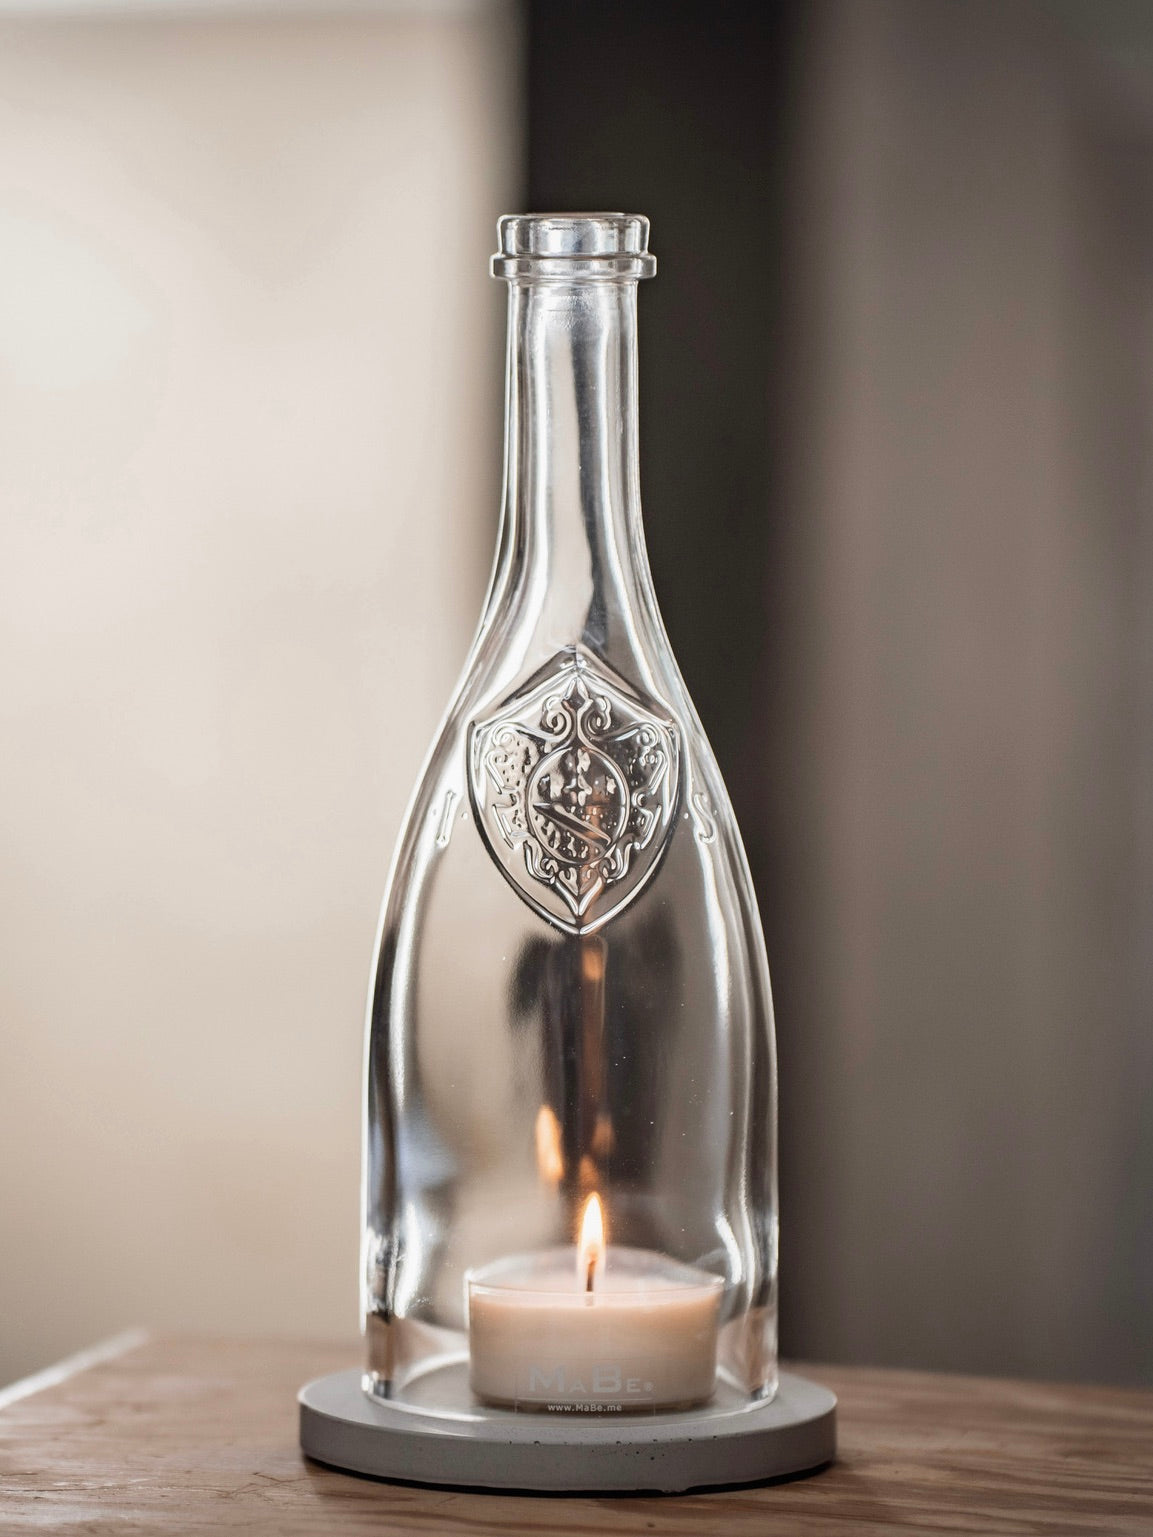 Windlicht 0,7l Emblem Flasche | Nachhaltig & Handmade 🇩🇪 | Upcycling,  Witzig & Designorientiert | Geschenkidee & Funktionell